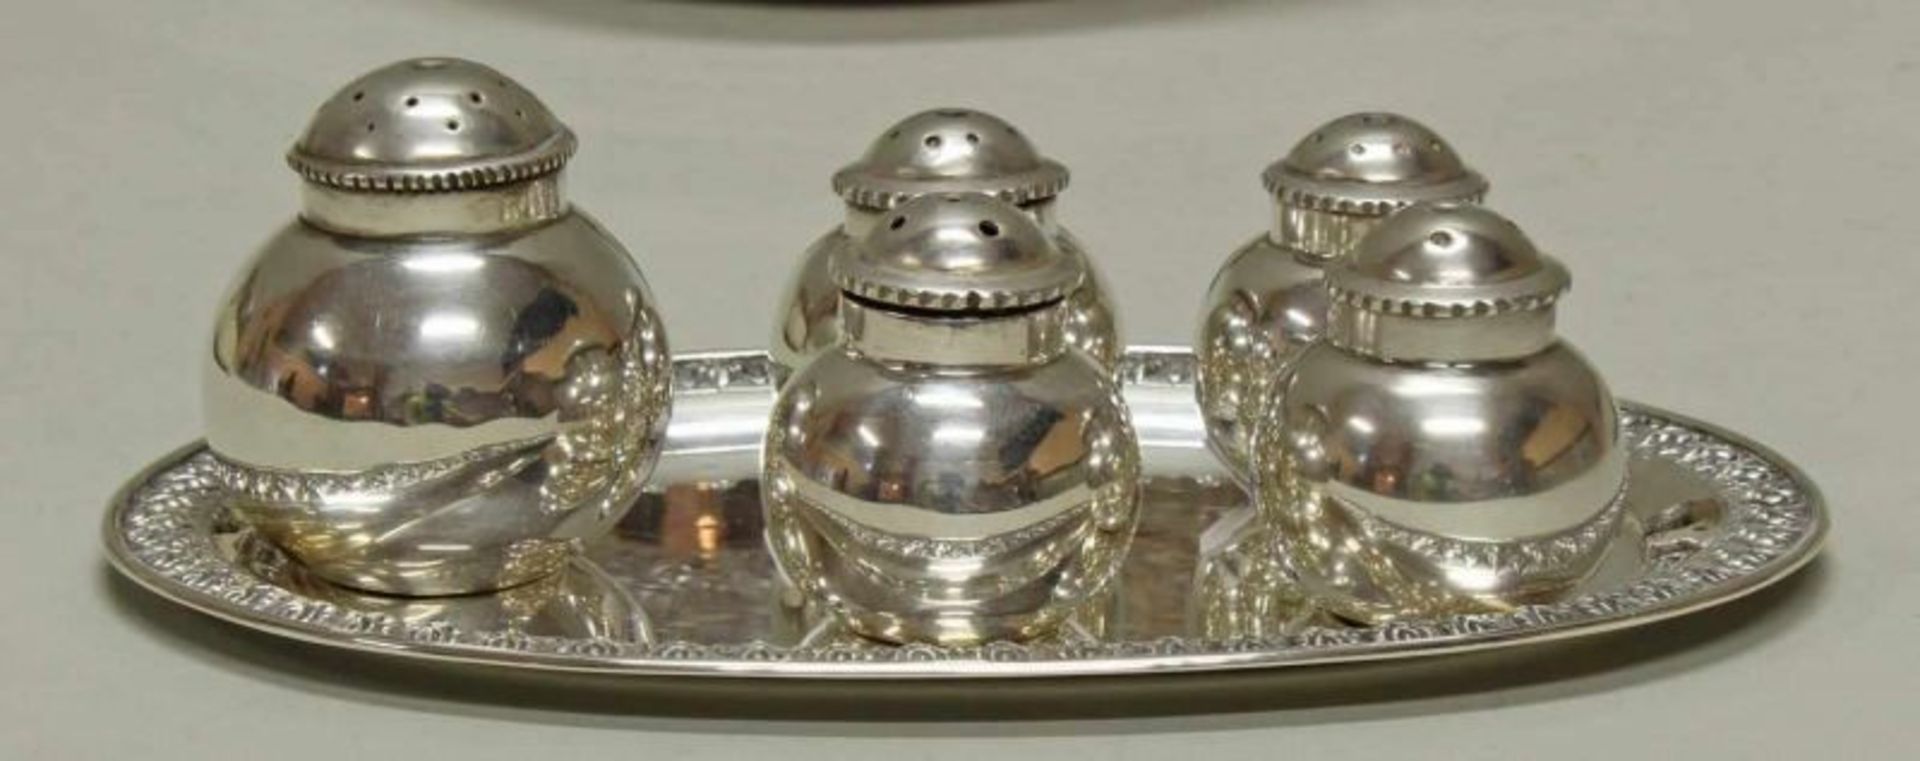 5 Gewürzstreuer, kleines Tablett, Silber 925, Südostasien, ca. 3.5-4 cm hoch, 13.5 x 9 cm, zus. - Image 2 of 2